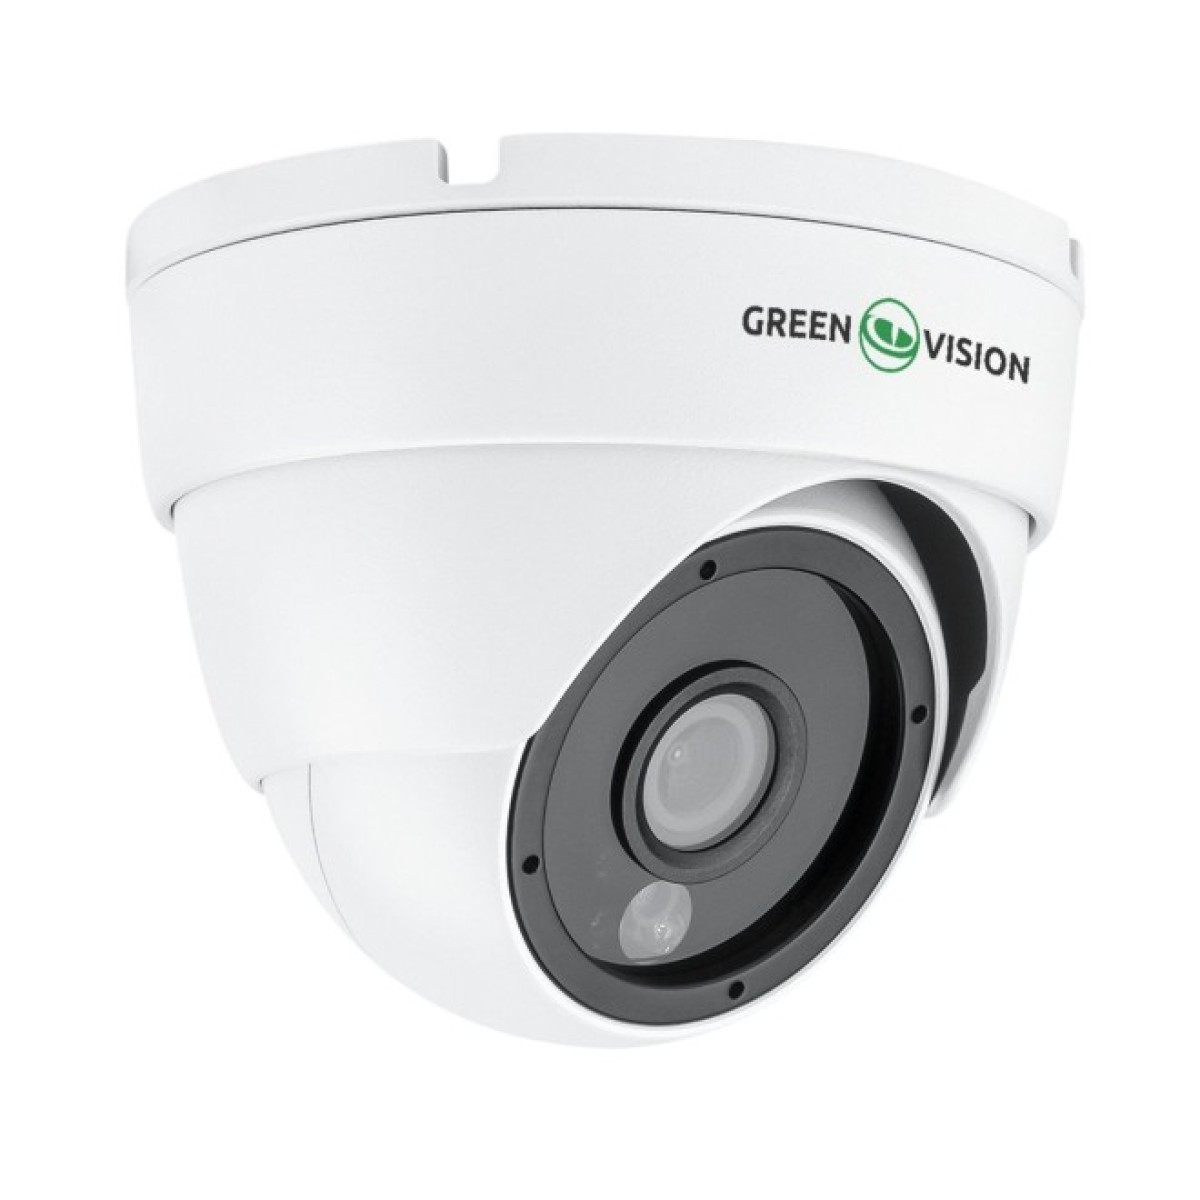 Гібридна антивандальна камера GreenVision GV-180-GHD-H-DOK50-20 98_98.jpg - фото 4